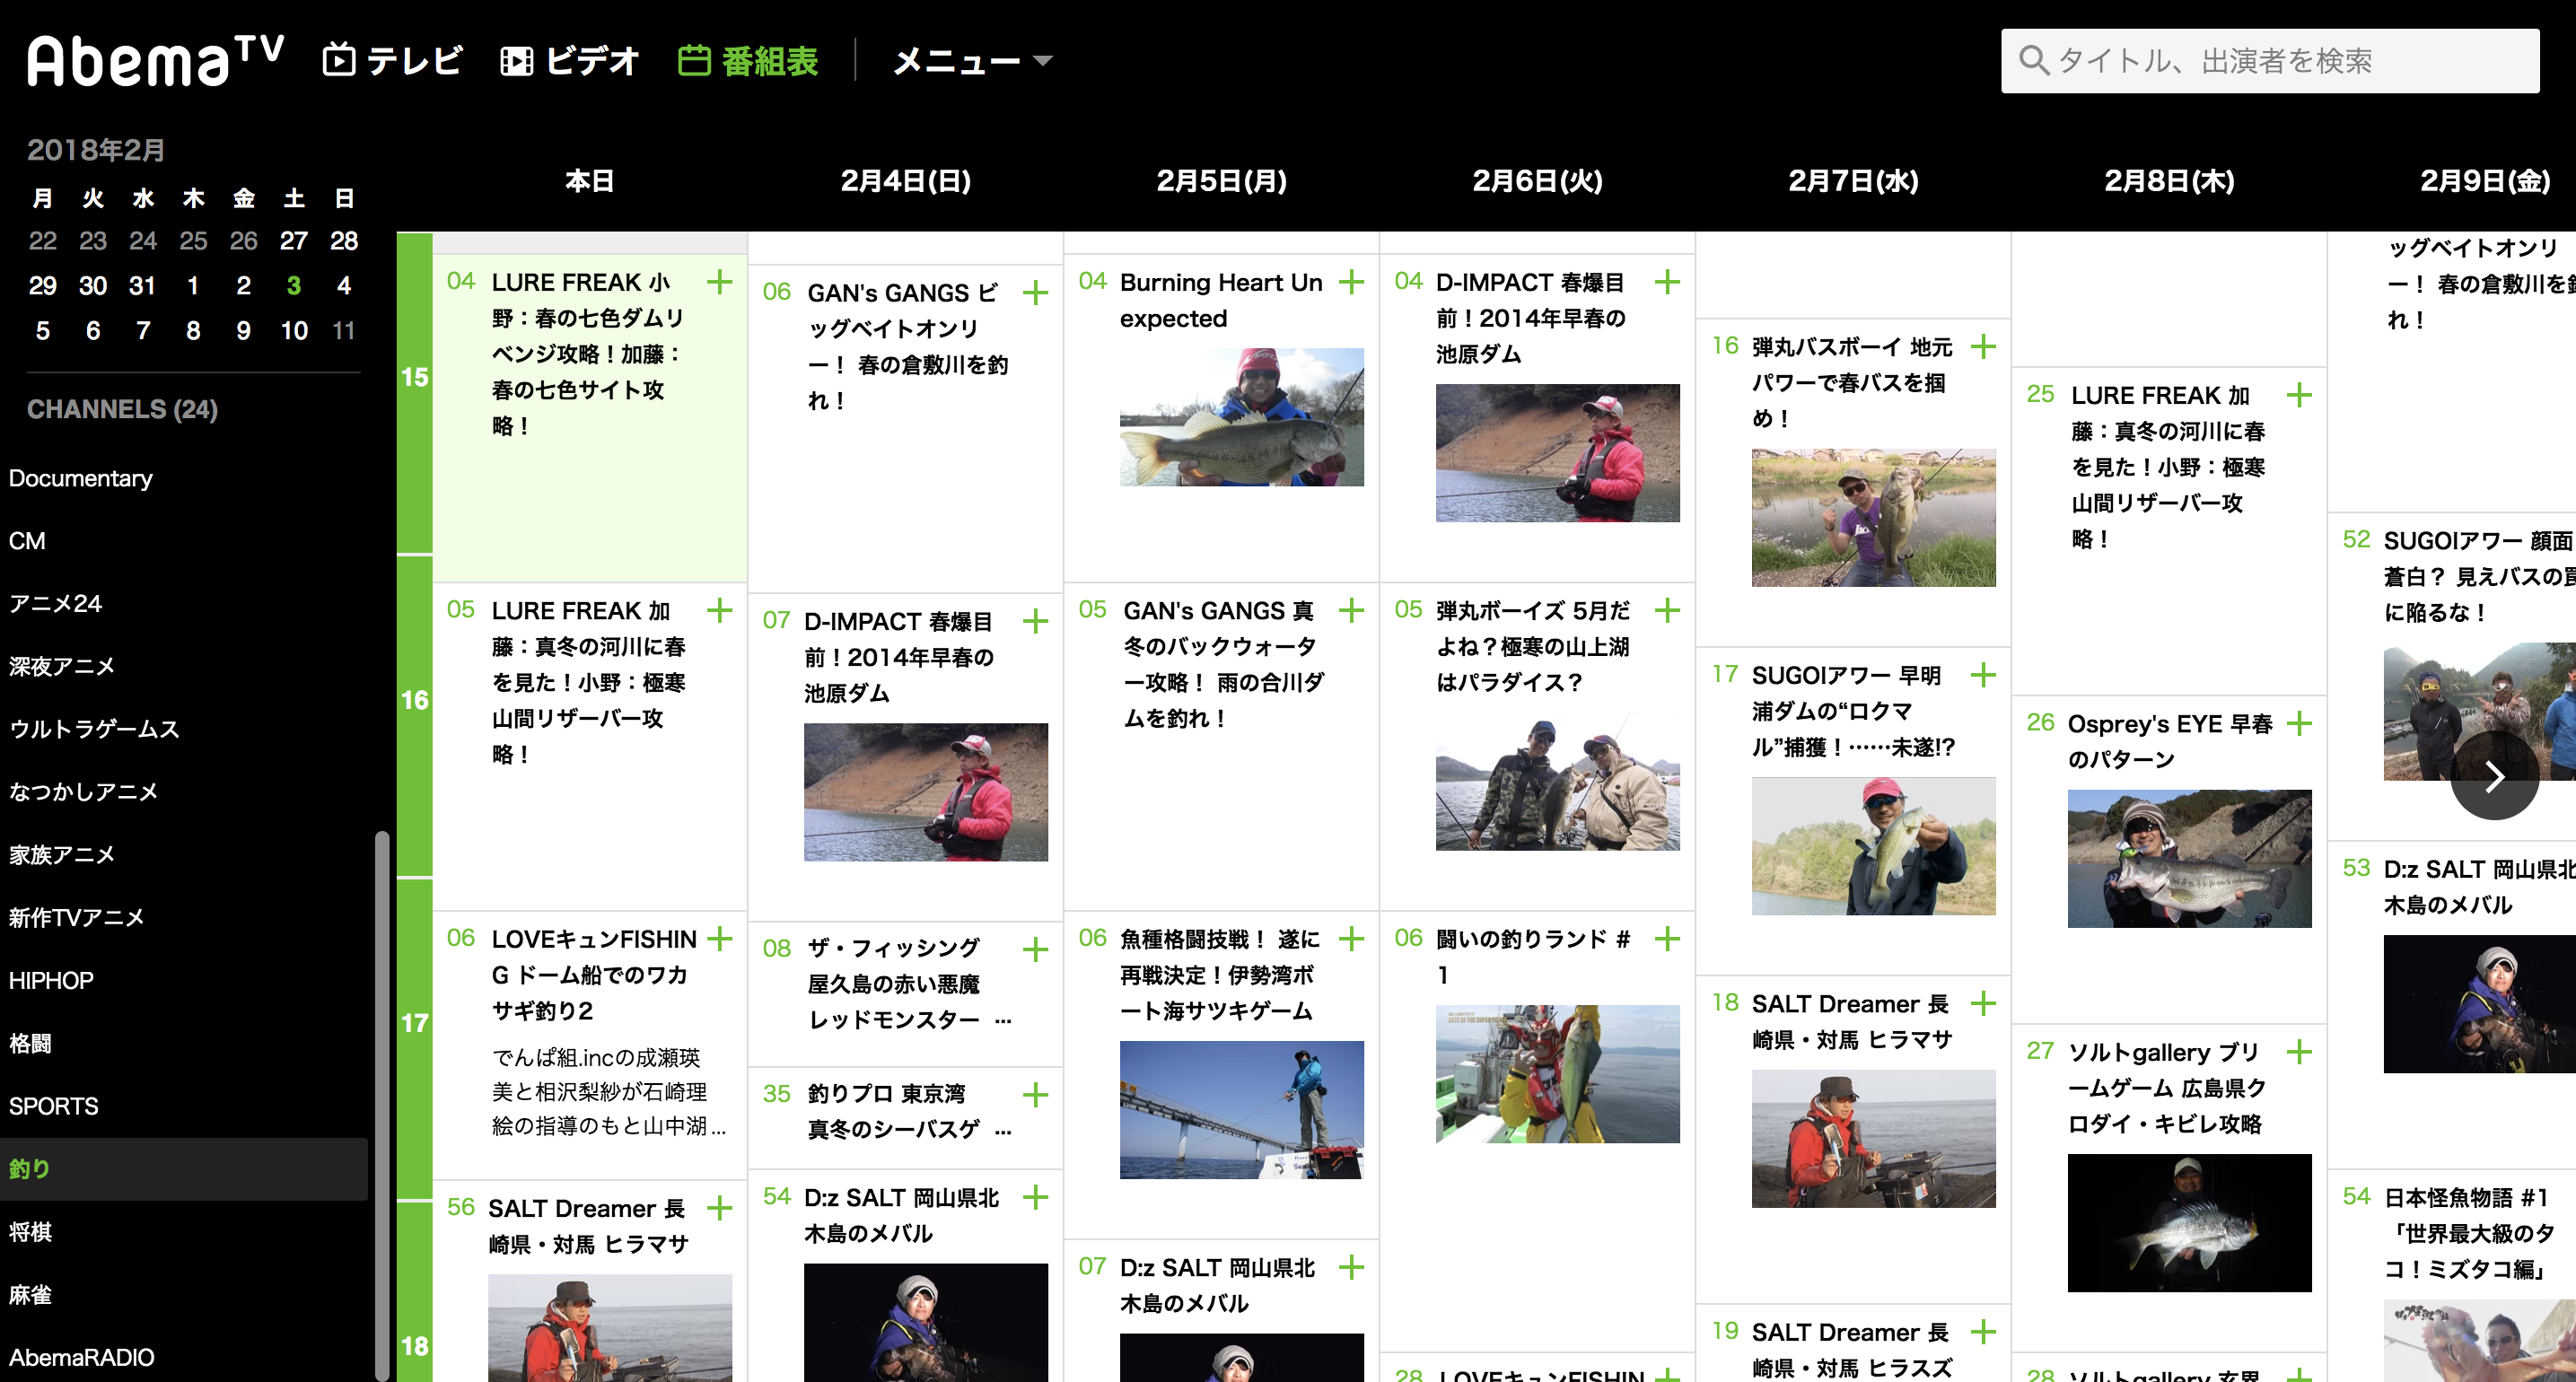 無料 バス釣り動画を観るならabema アベマ Tvは絶対にチェックしたい Shimotsumagazine